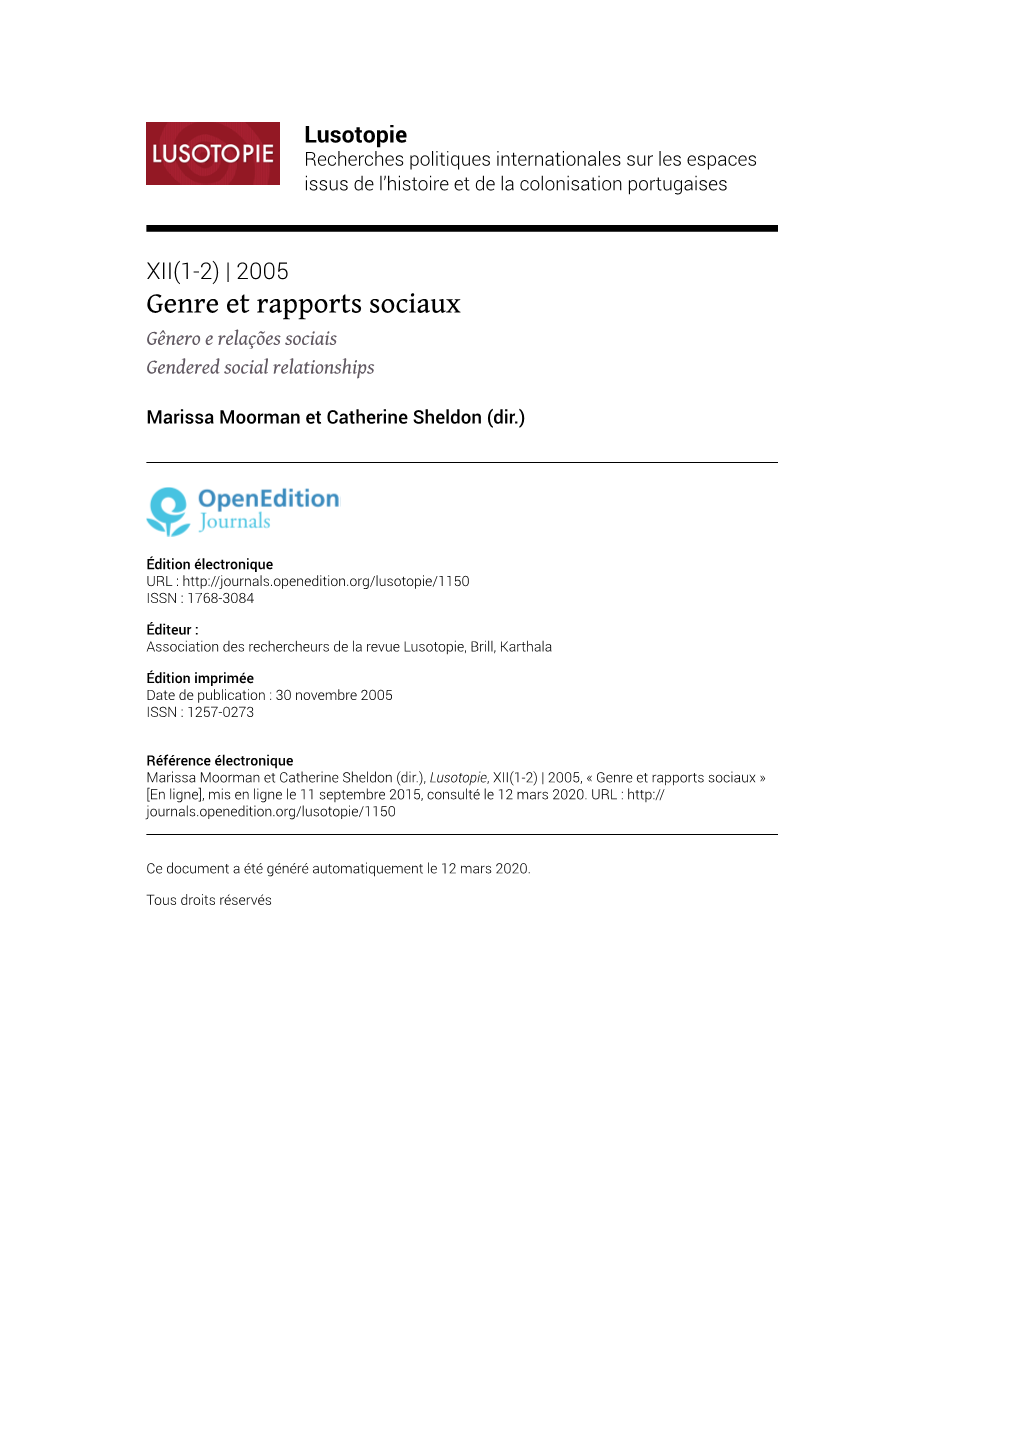 Lusotopie, XII(1-2) | 2005, « Genre Et Rapports Sociaux » [En Ligne], Mis En Ligne Le 11 Septembre 2015, Consulté Le 12 Mars 2020